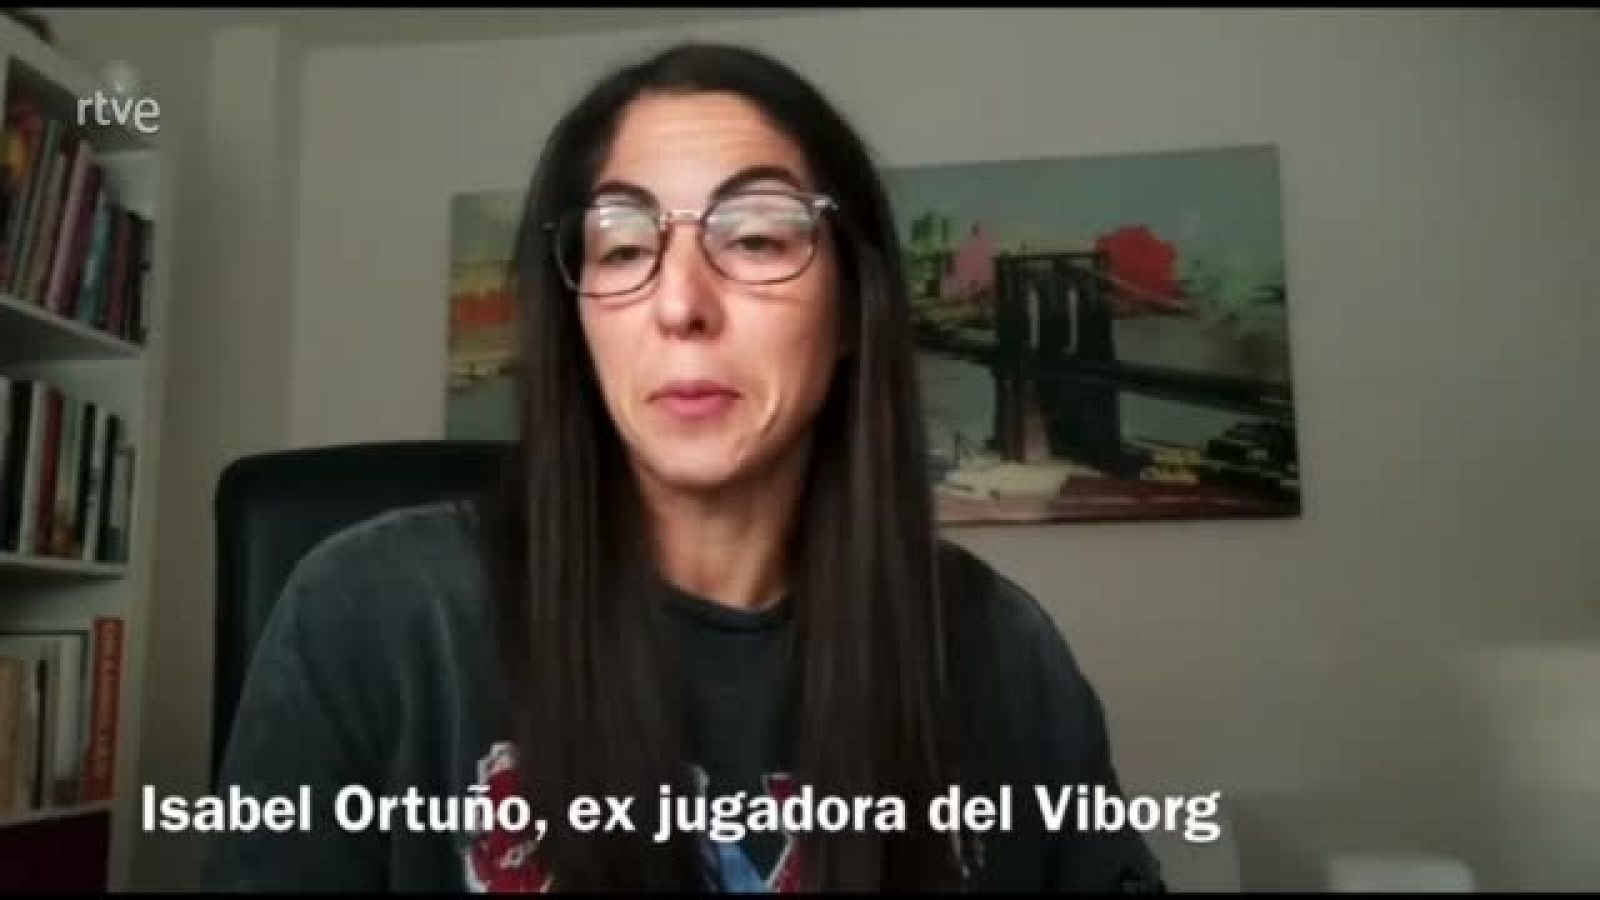 Isabel Orduño: "Fui la primera jugadora española en jugar en el extranjero"